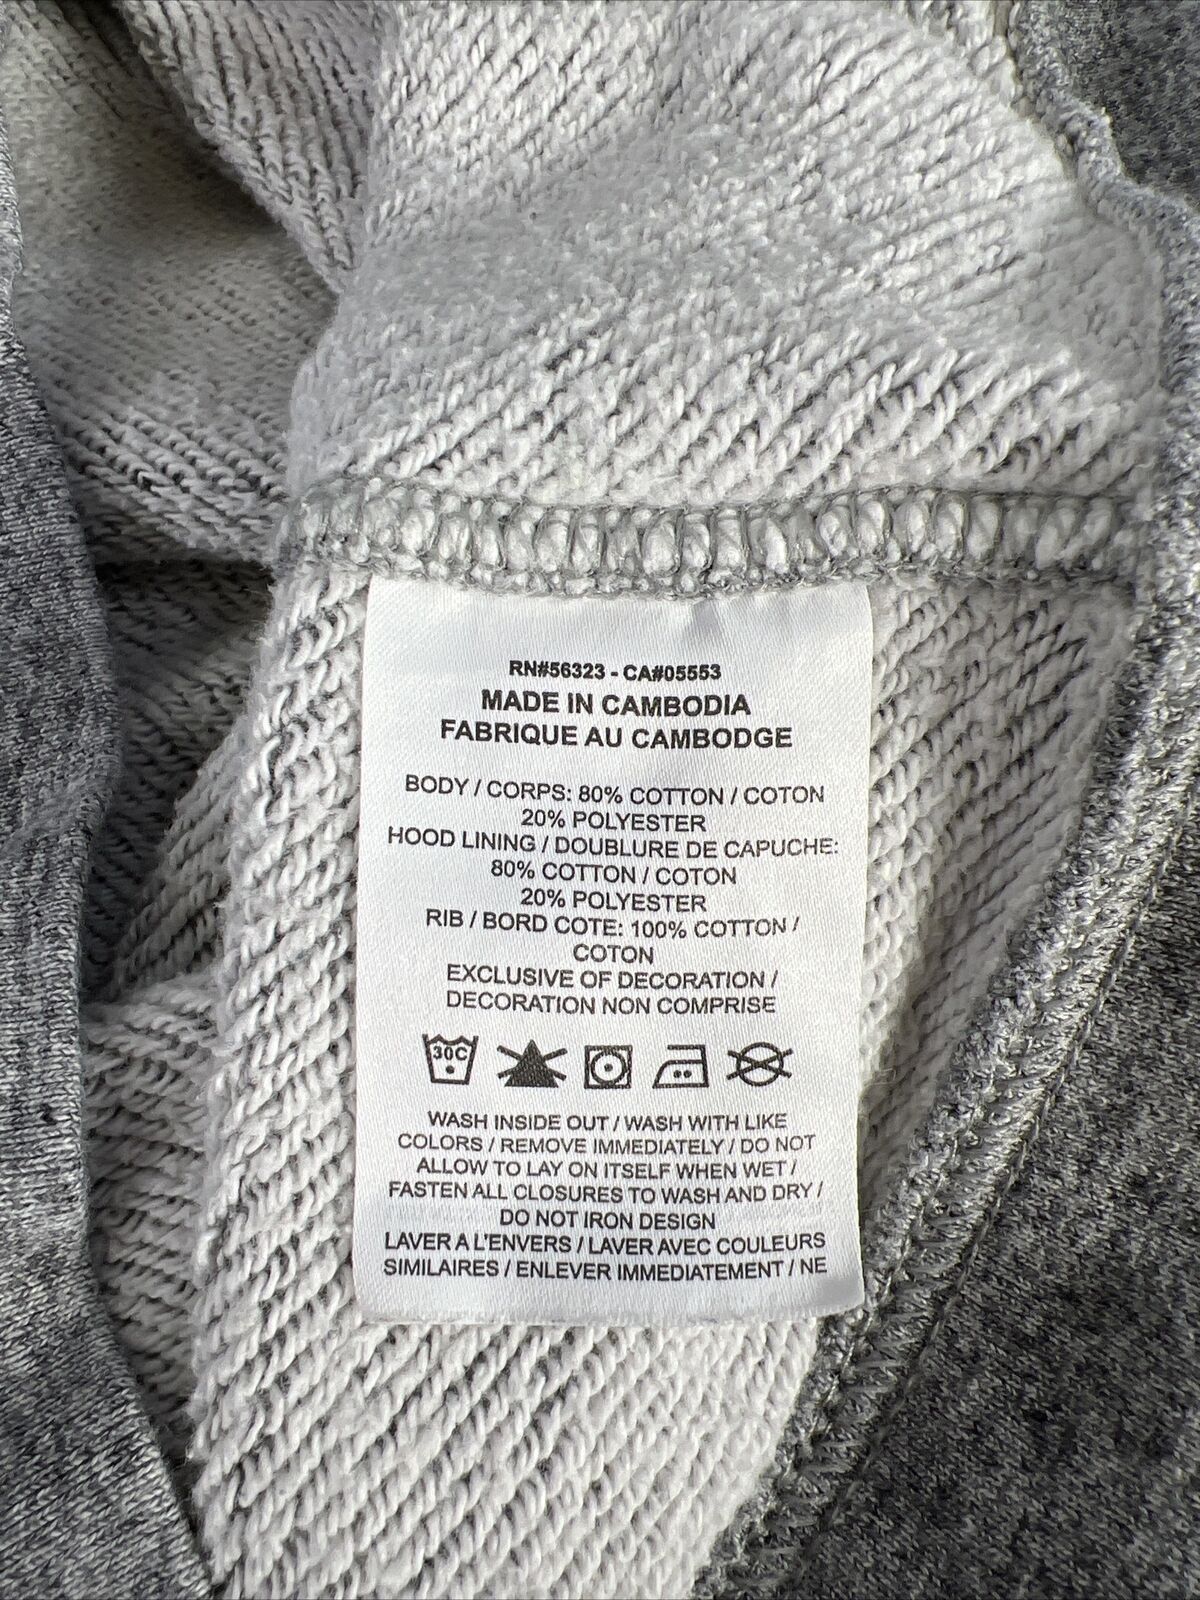 Nike Sudadera con capucha y cremallera completa Sportswear Heritage de mujer de color gris - S